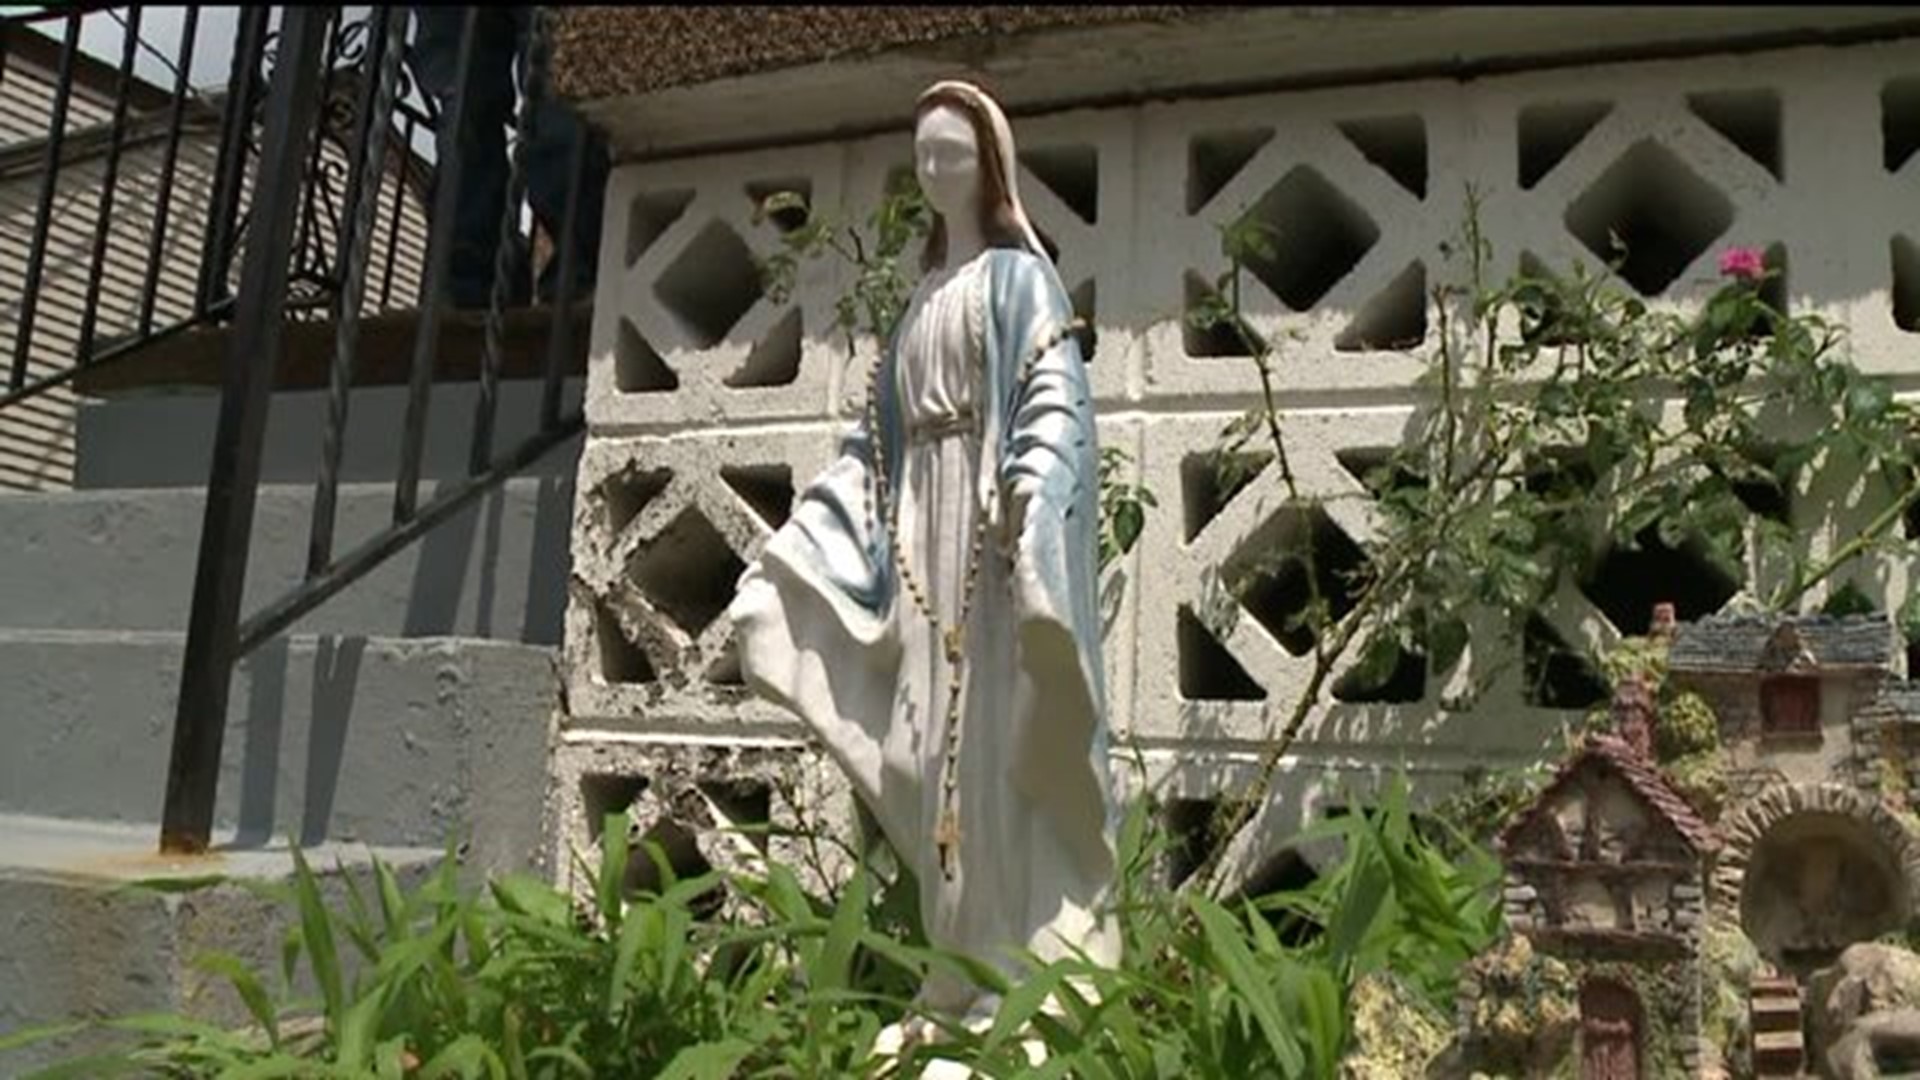 One Statue Stolen, Another Damaged in Hazleton